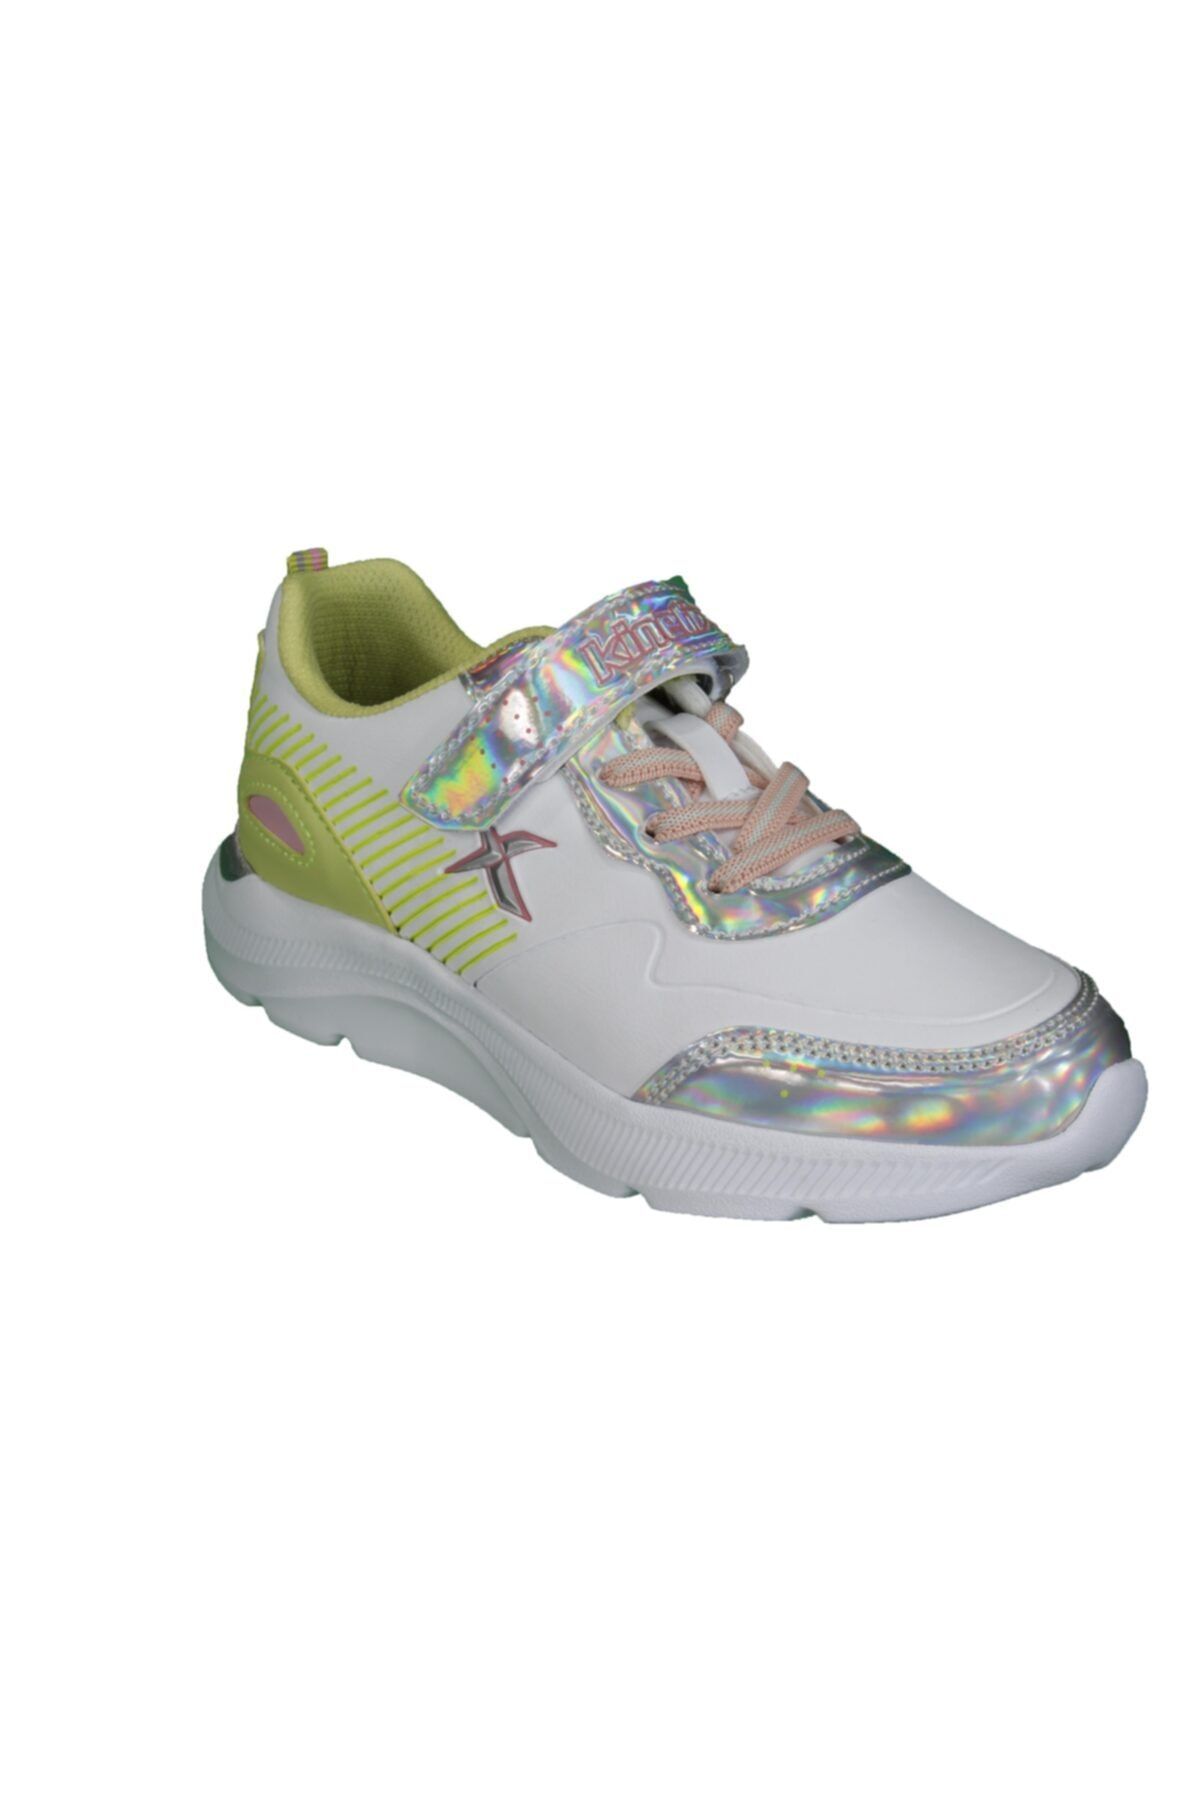 Kinetix ROARS Beyaz Kız Çocuk Yürüyüş Ayakkabısı 100534406